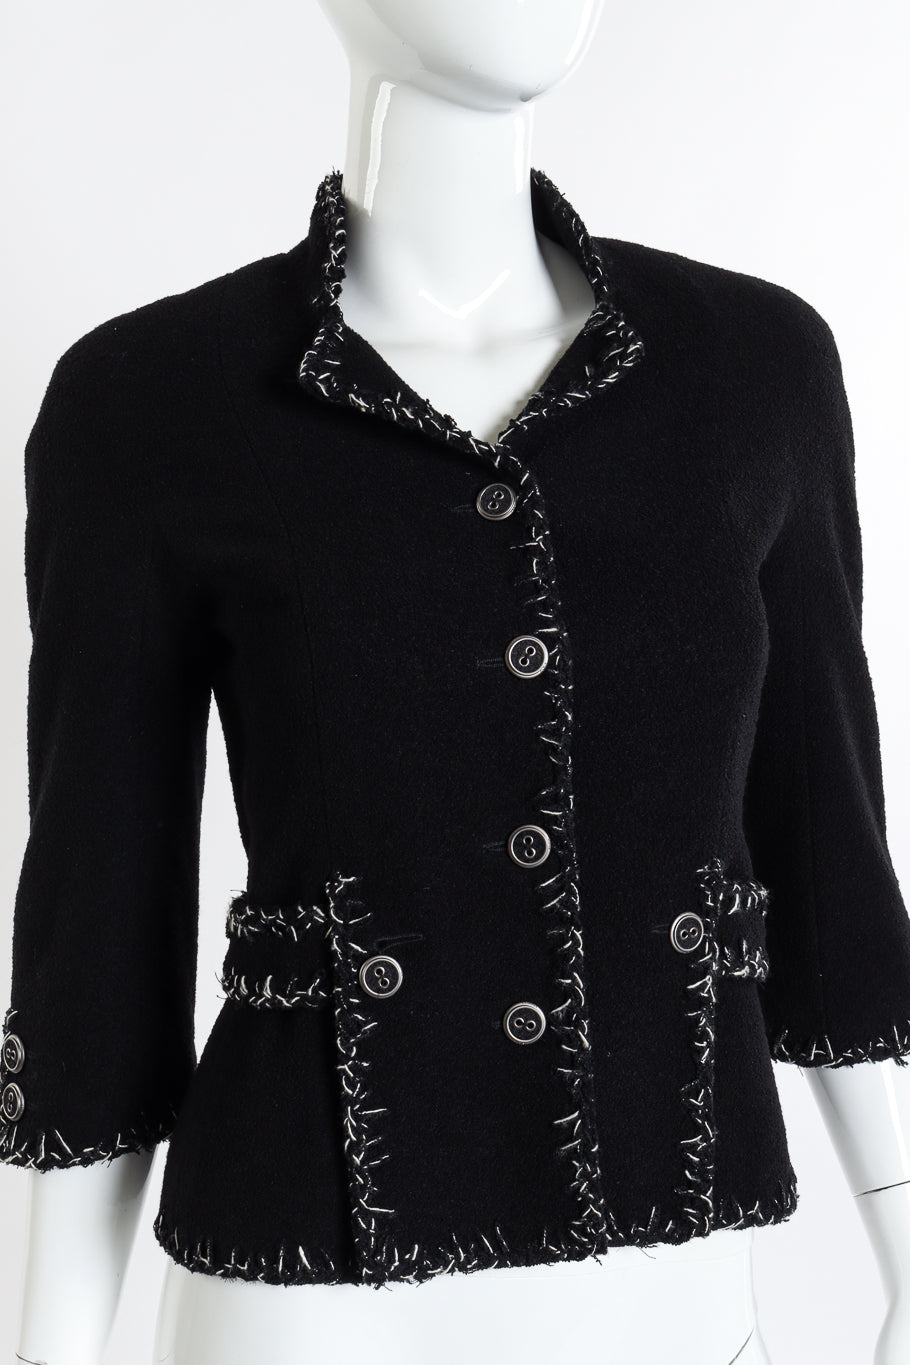 Chanel 2008 S Woven Stitch Trim Jacket front on mannequin closeup @recessla